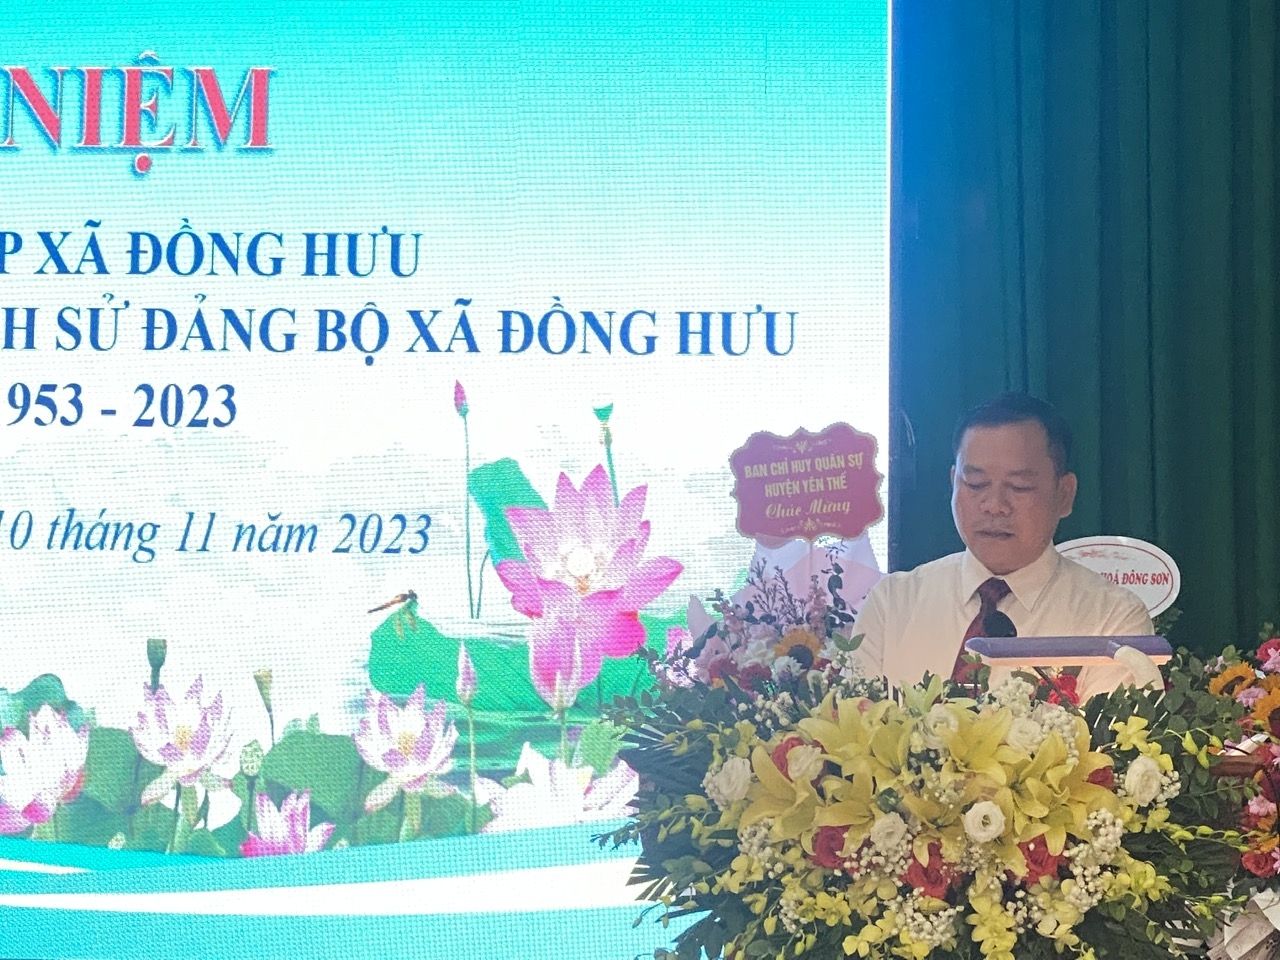 Bắc Giang: Xã Đồng Hưu tổ chức Lễ kỷ niệm 70 năm ngày thành lập và ra mắt cuốn Lịch sử Đảng bộ